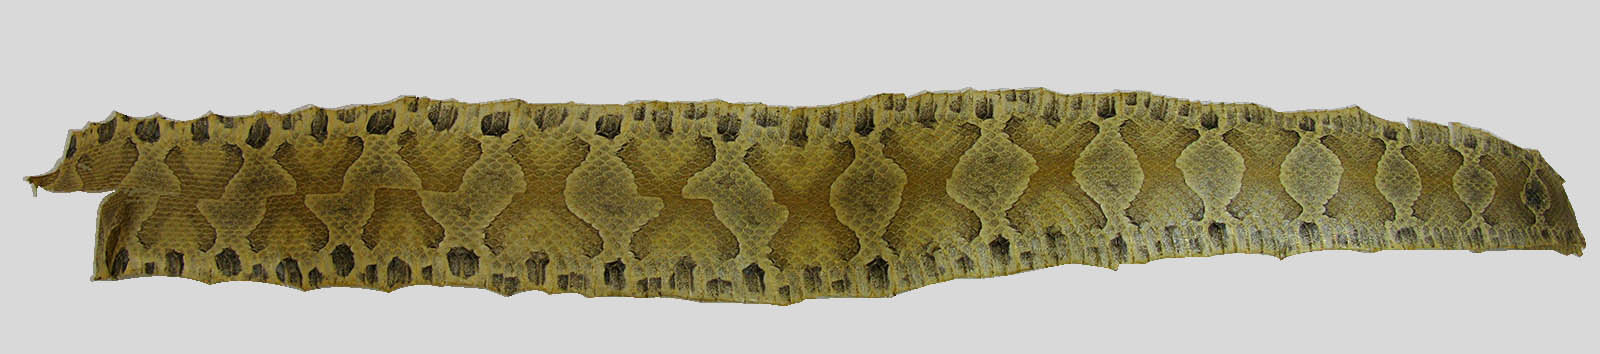 Copperhead Snake (Agkistrodon contortrix) Skin